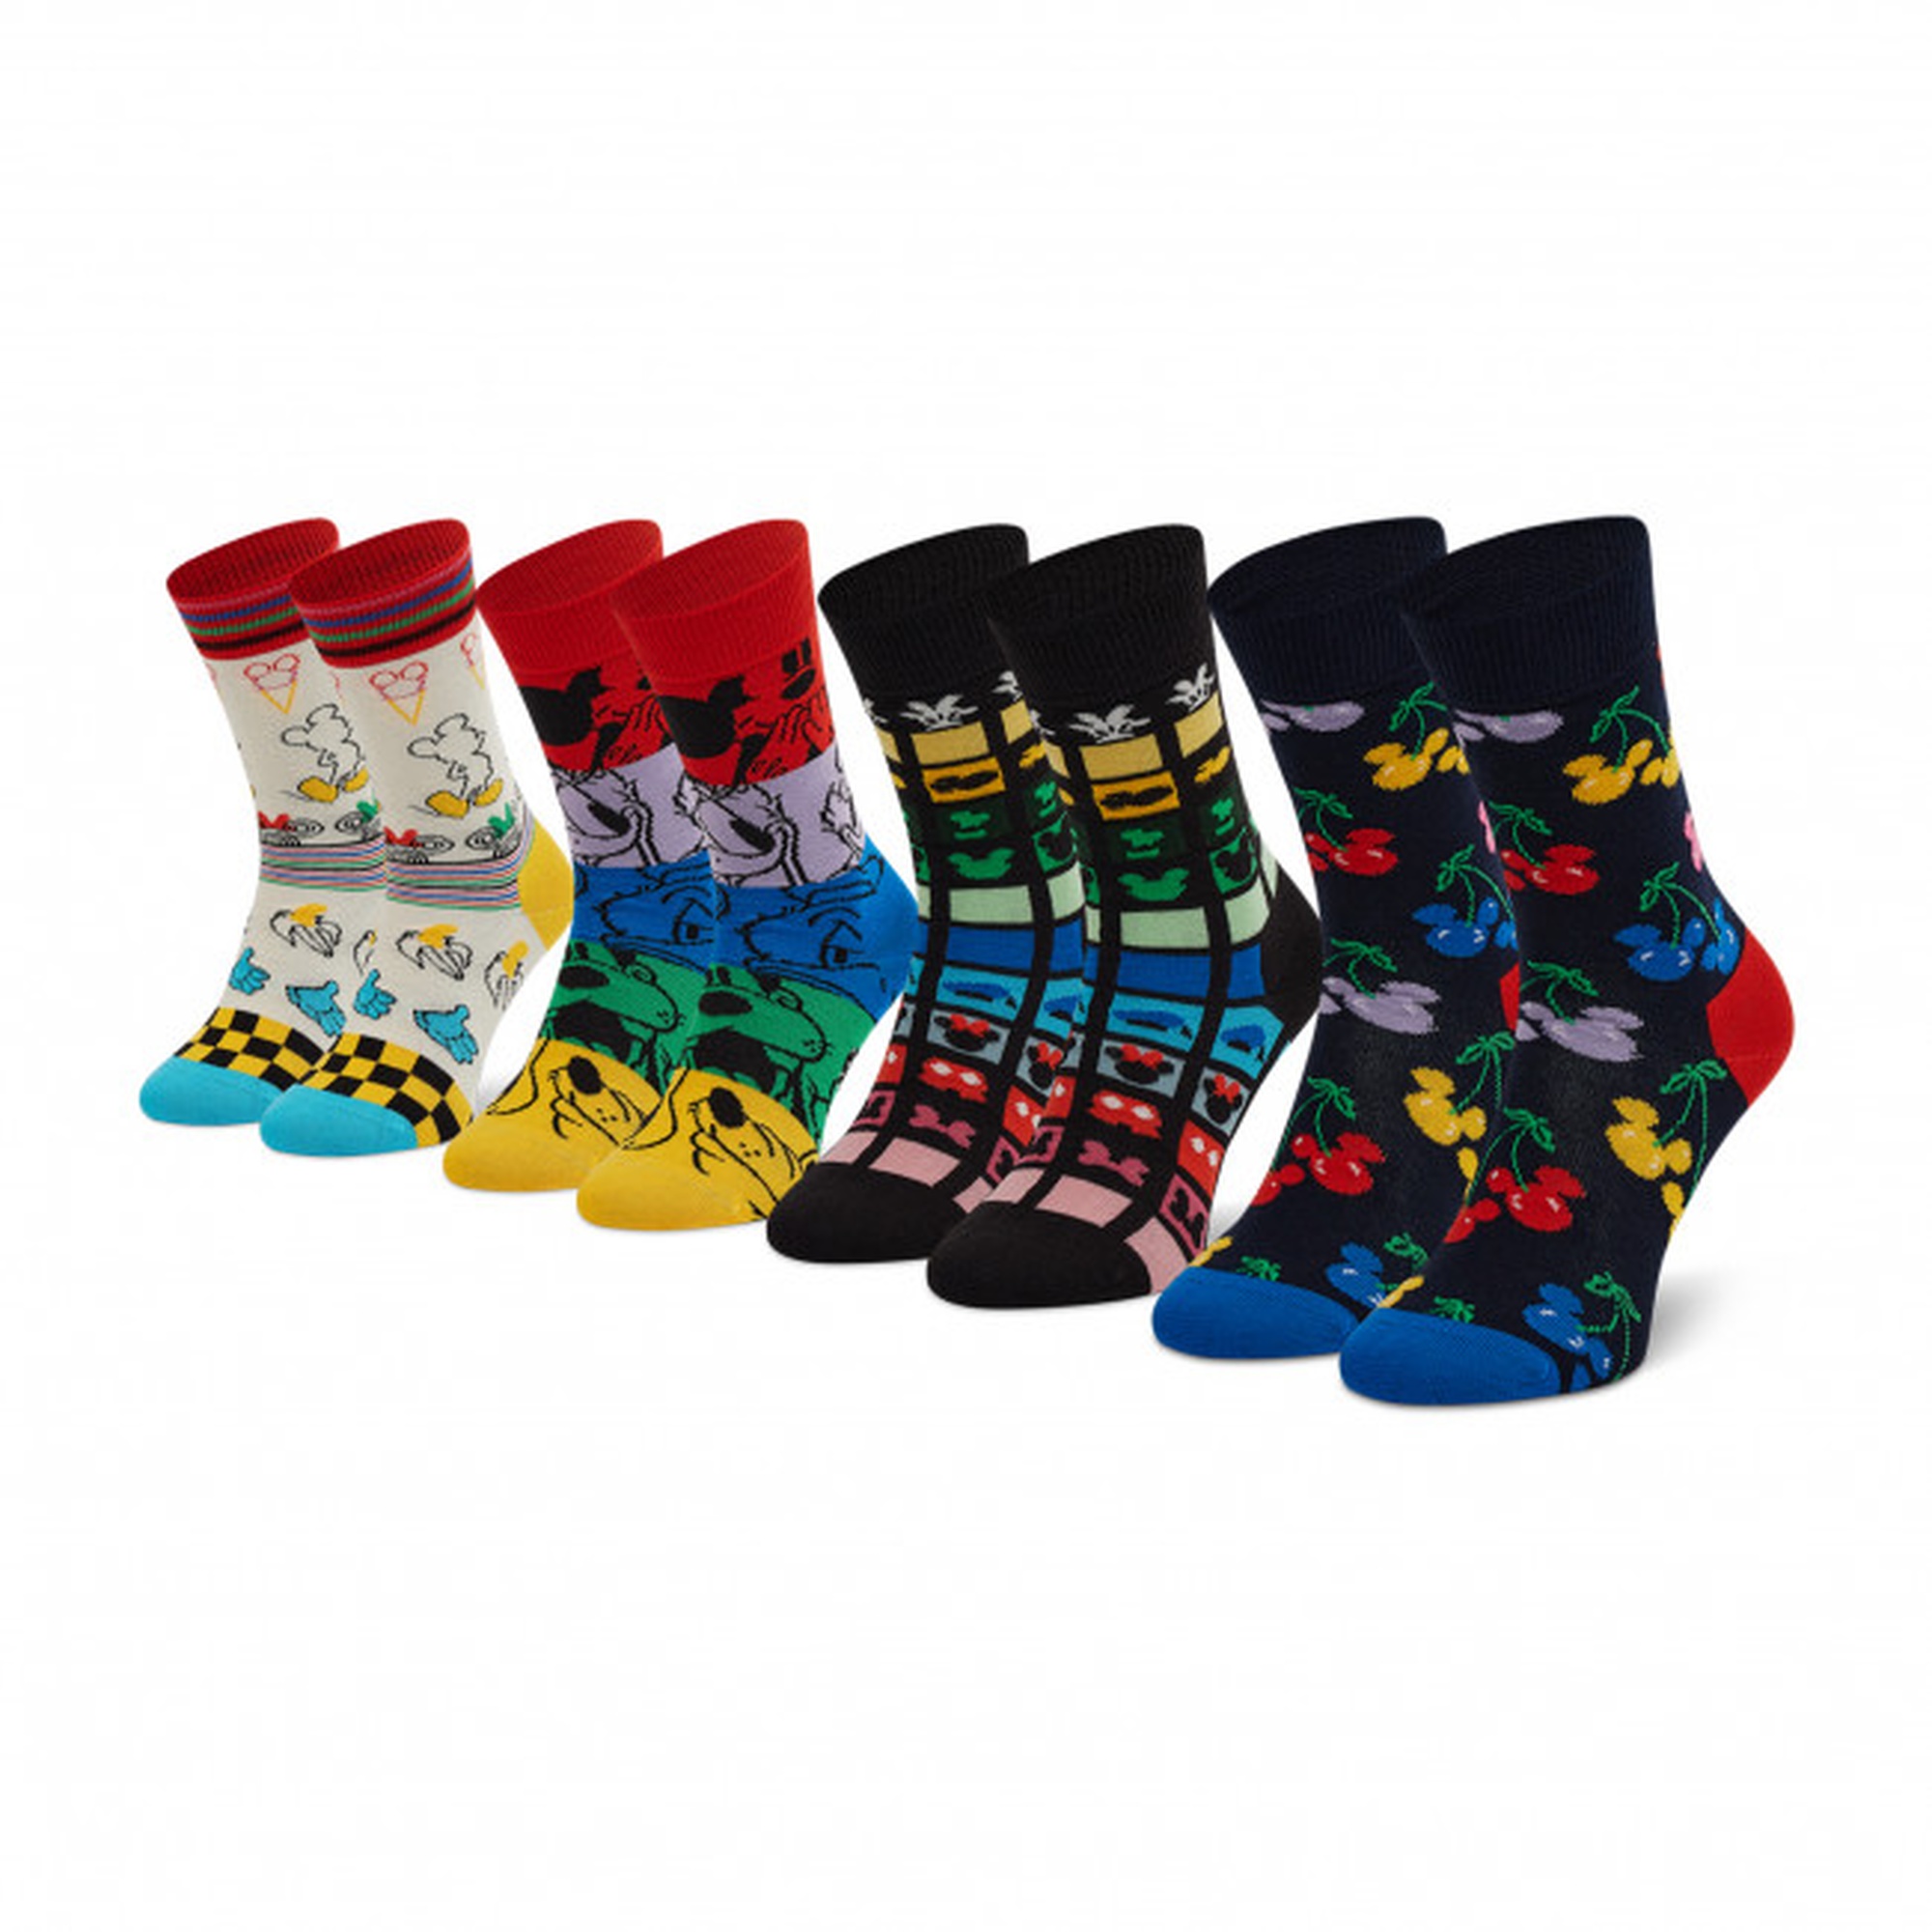 Pack 4 Pares De Meias Happy Socks Disney Gift Set - multicolor - 